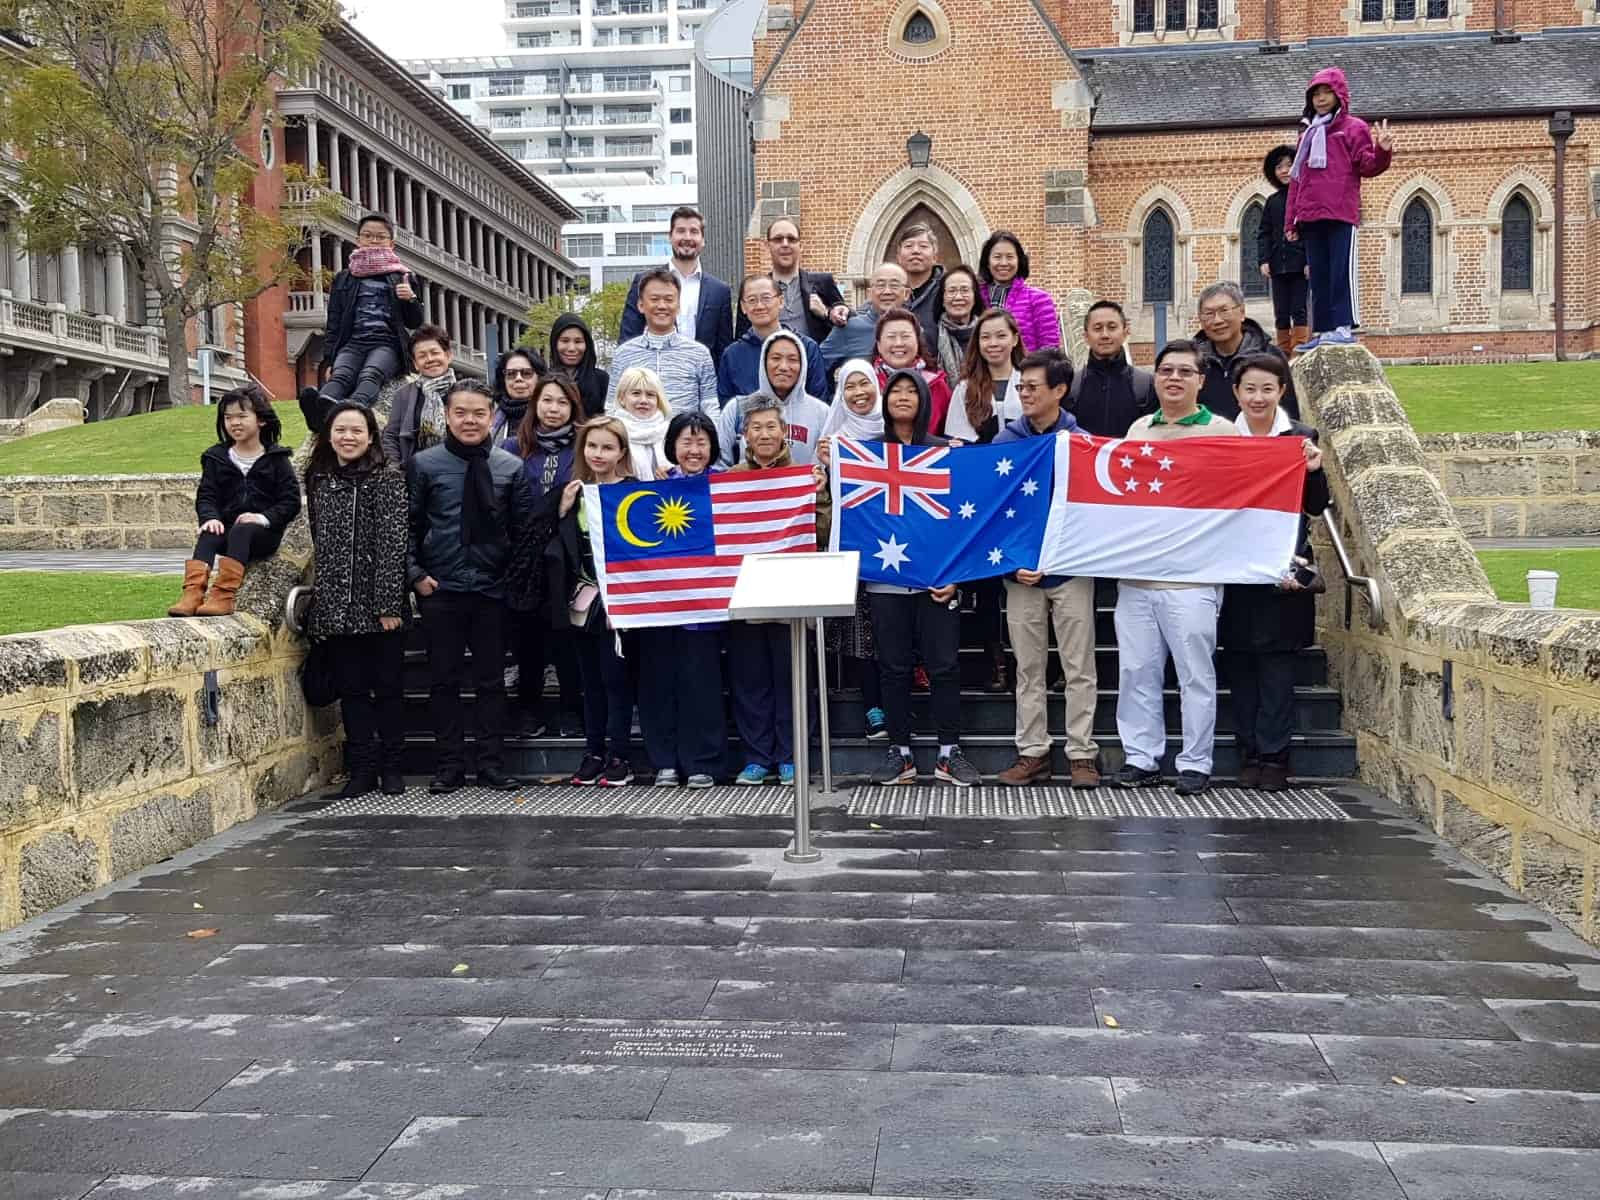 Ausdtralia Asia Exchange Conference